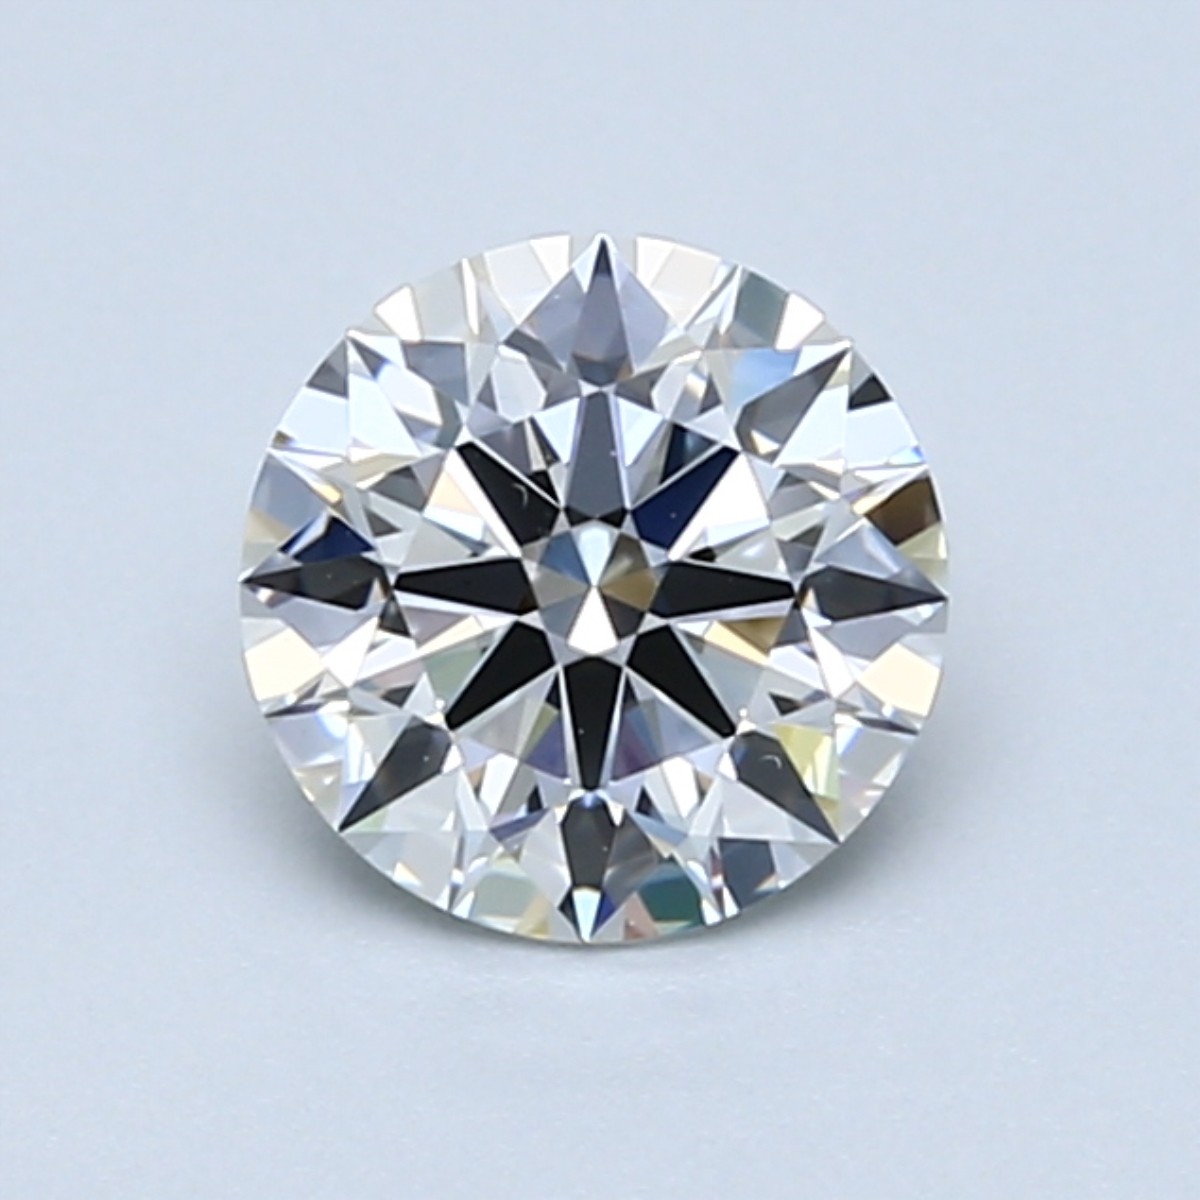 E Color Diamonds: Are They Worth The Price?